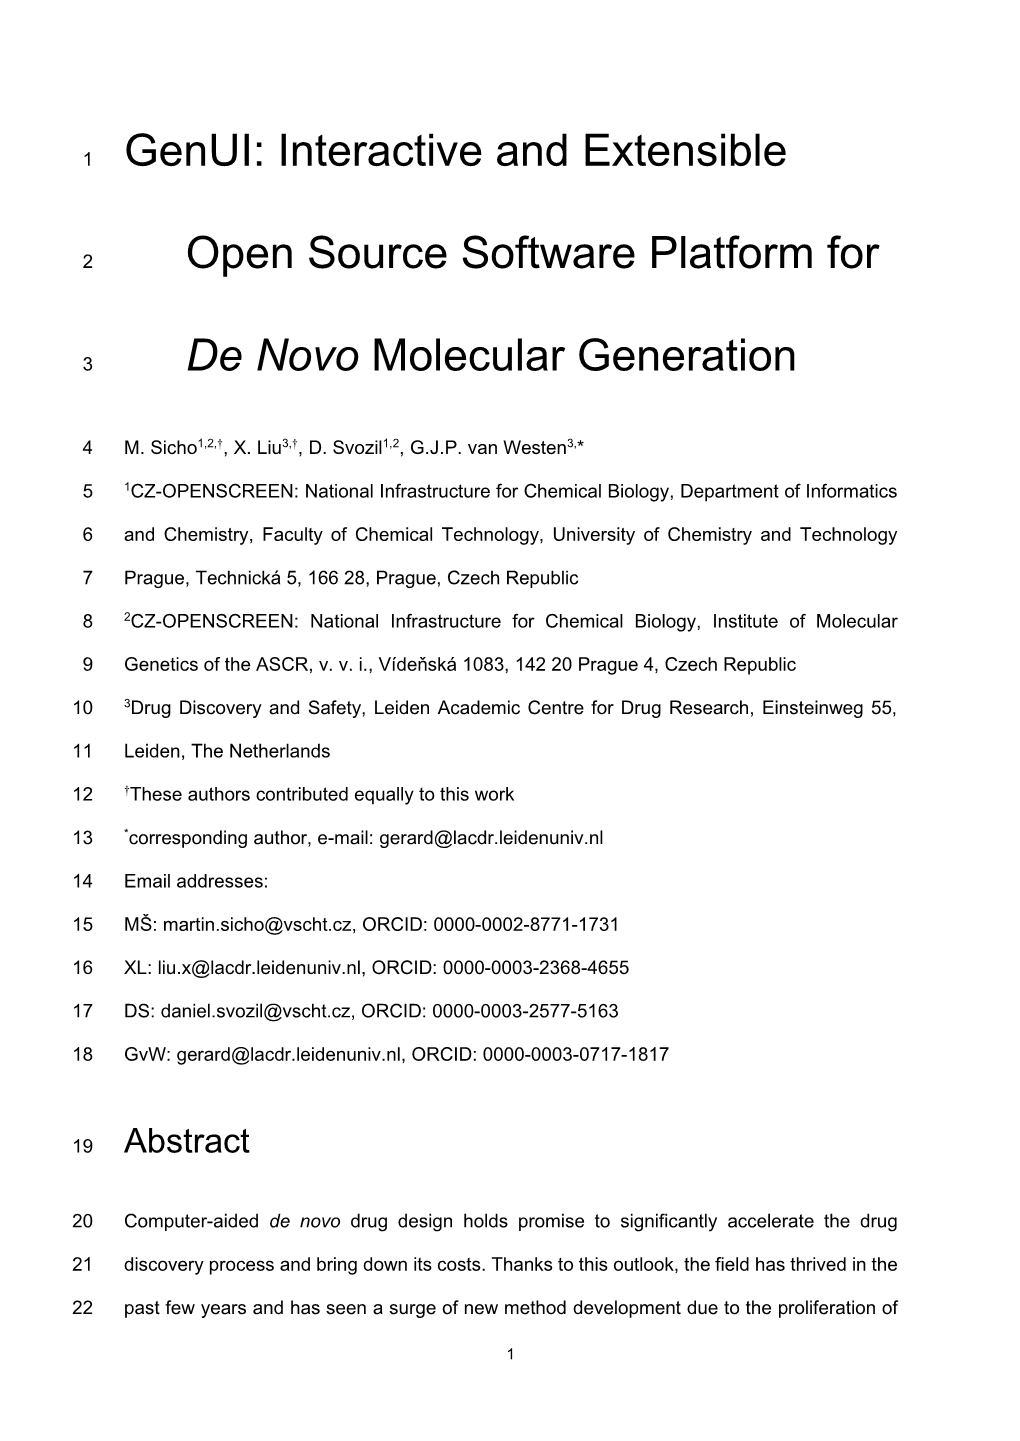 Open Source Software Platform For